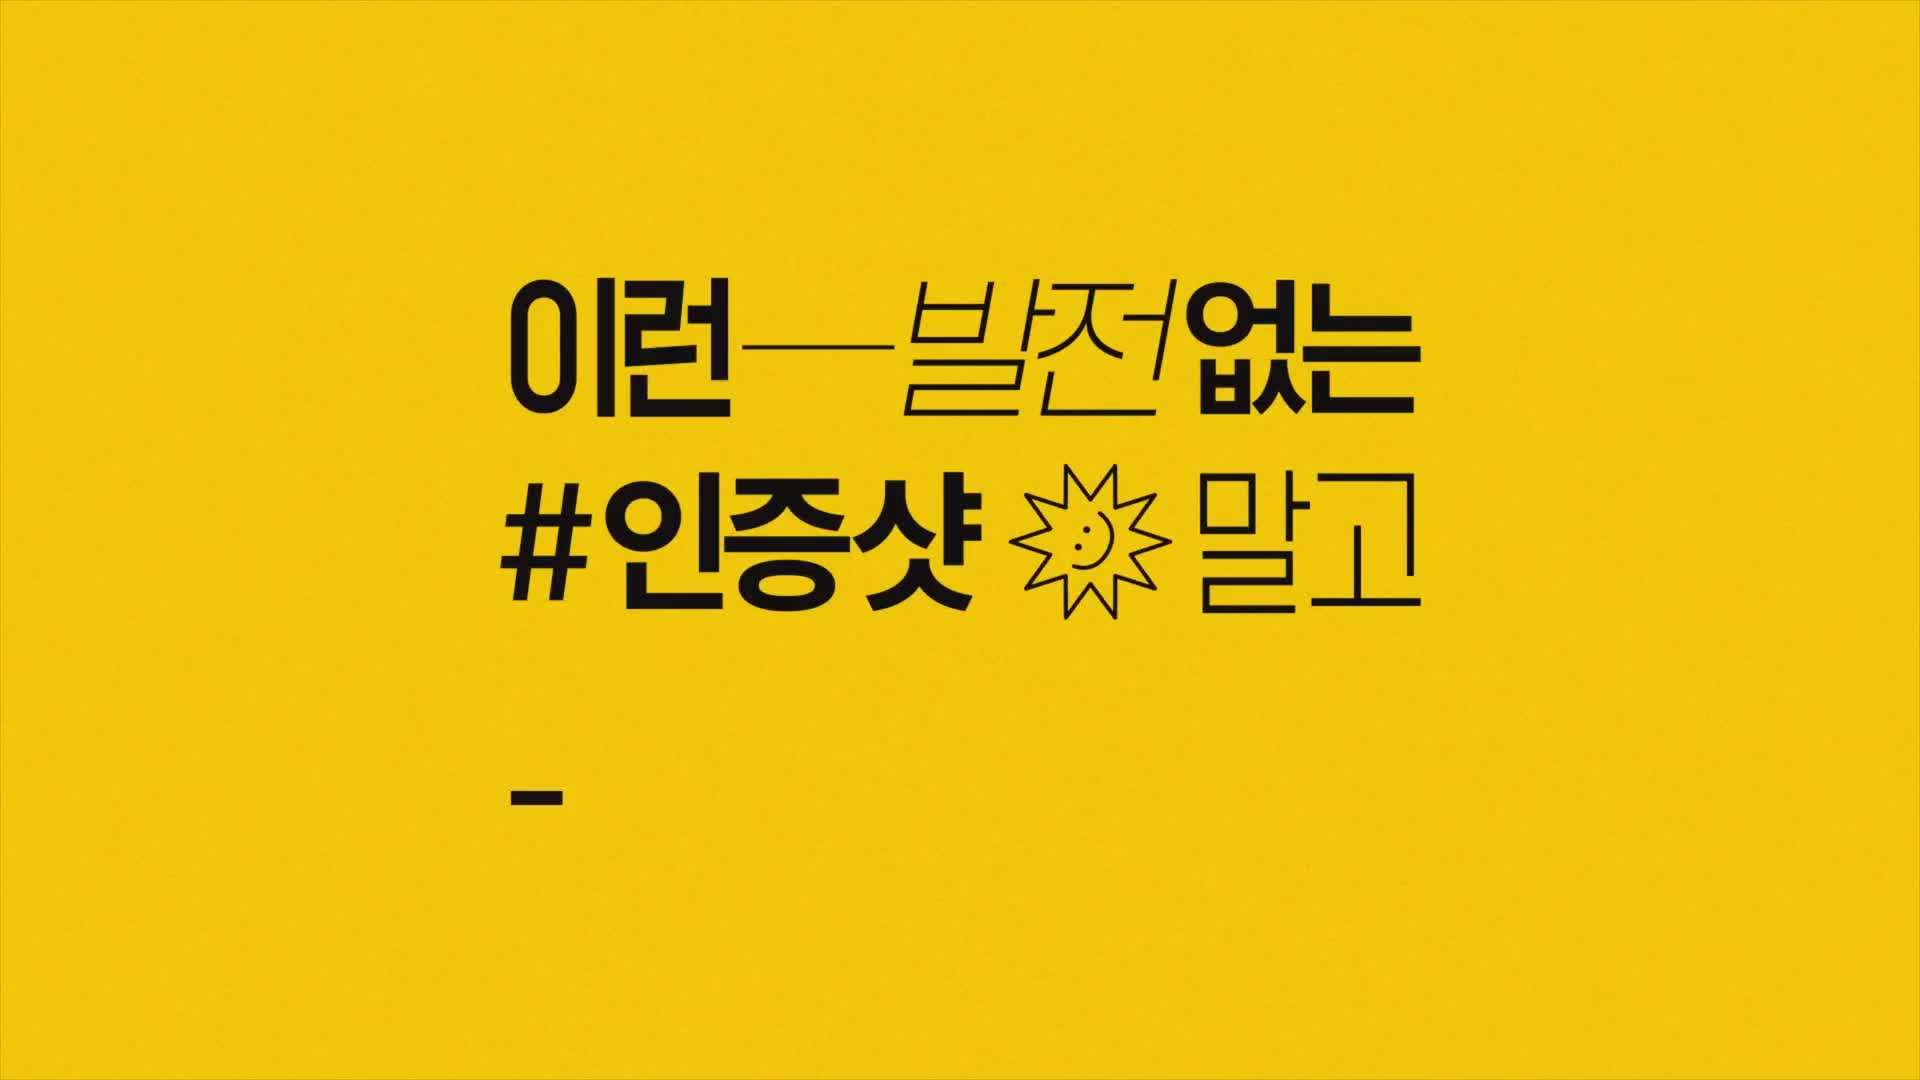 韩国个性拼接反转人生《成为明星》